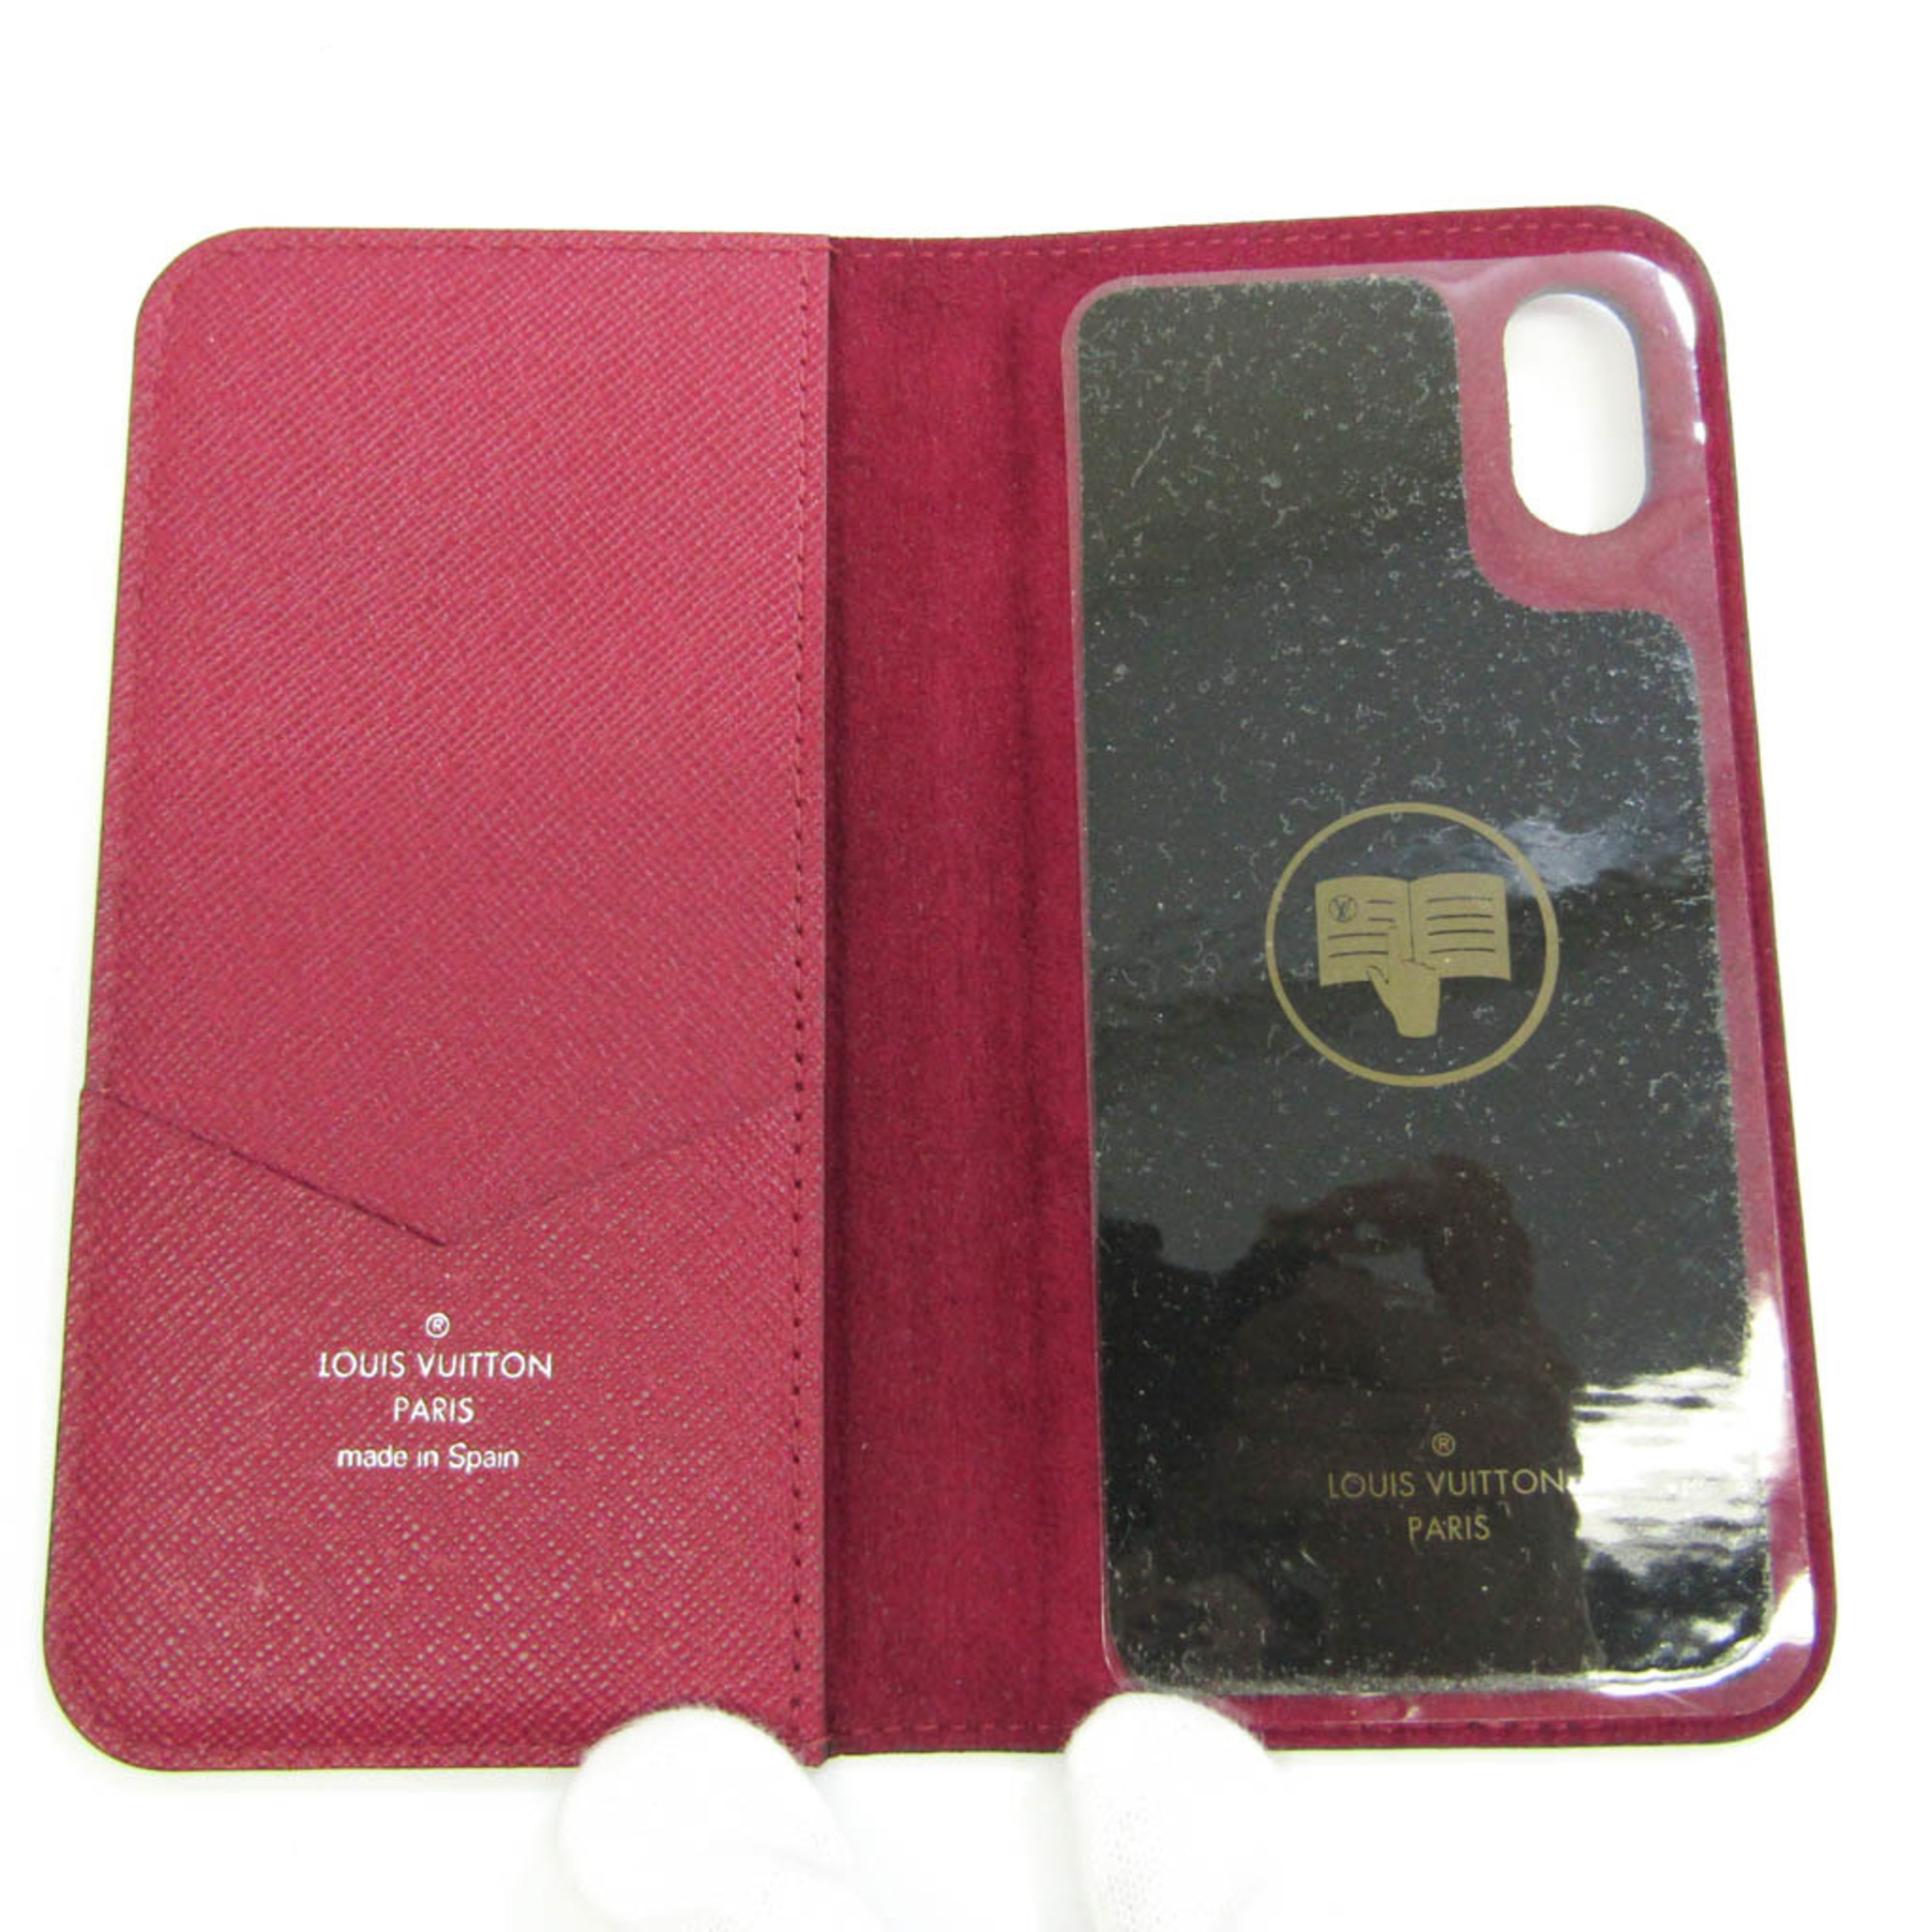 ルイ・ヴィトン(Louis Vuitton) エピ iPhone X フォリオ M64468 エピレザー 手帳型/カード入れ付きケース iPhone X 対応 フューシャ